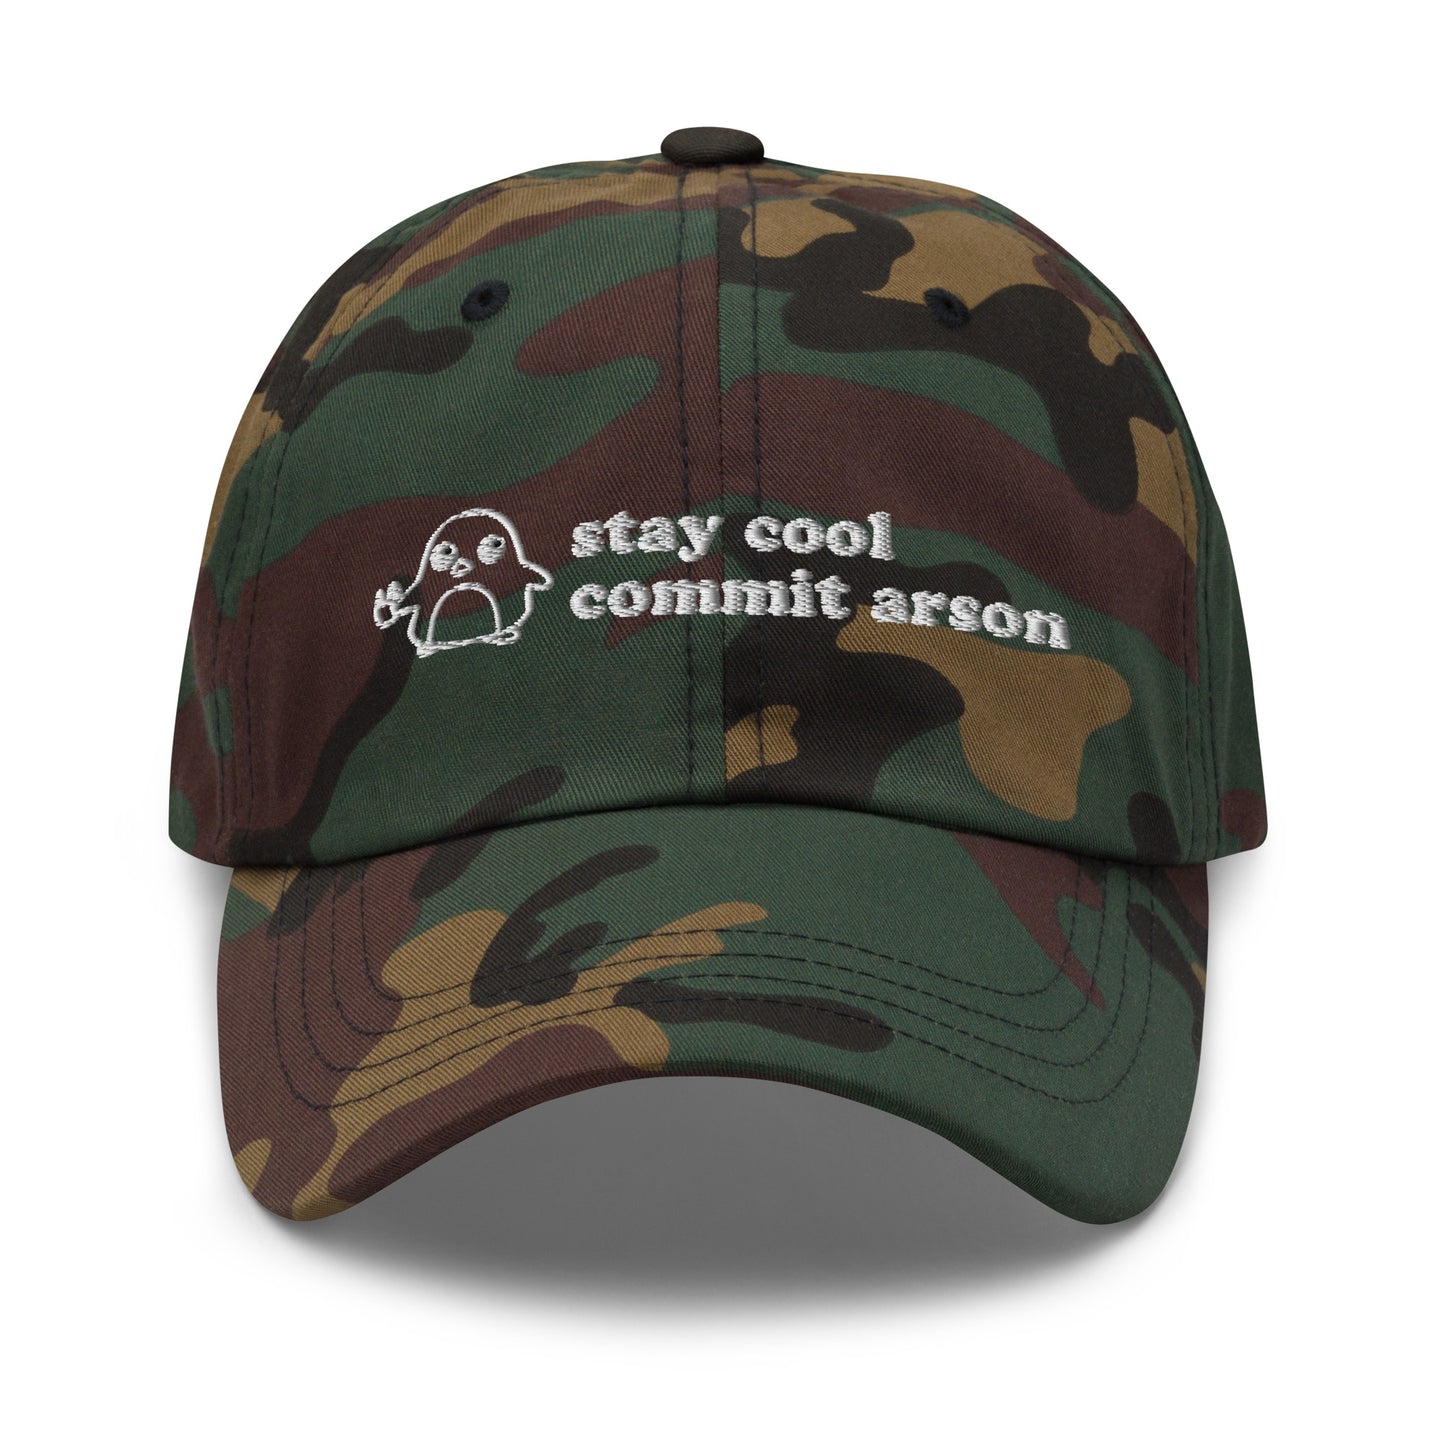 Hats – Got Funny?